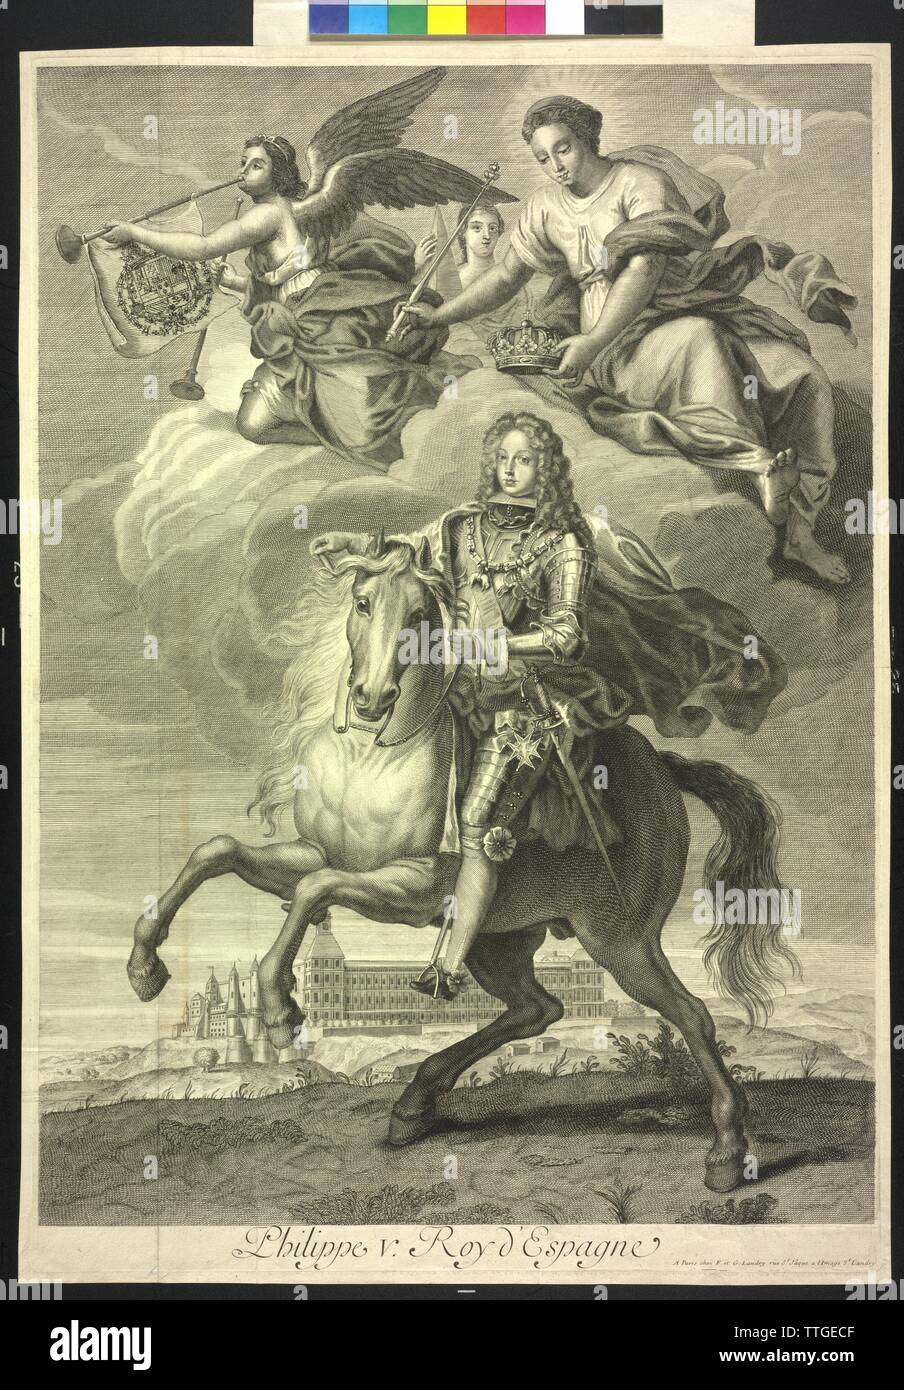 Philipp V., König von Spanien, Reiter Bild. Kupferstich, Additional-Rights - Clearance-Info - Not-Available Stockfoto